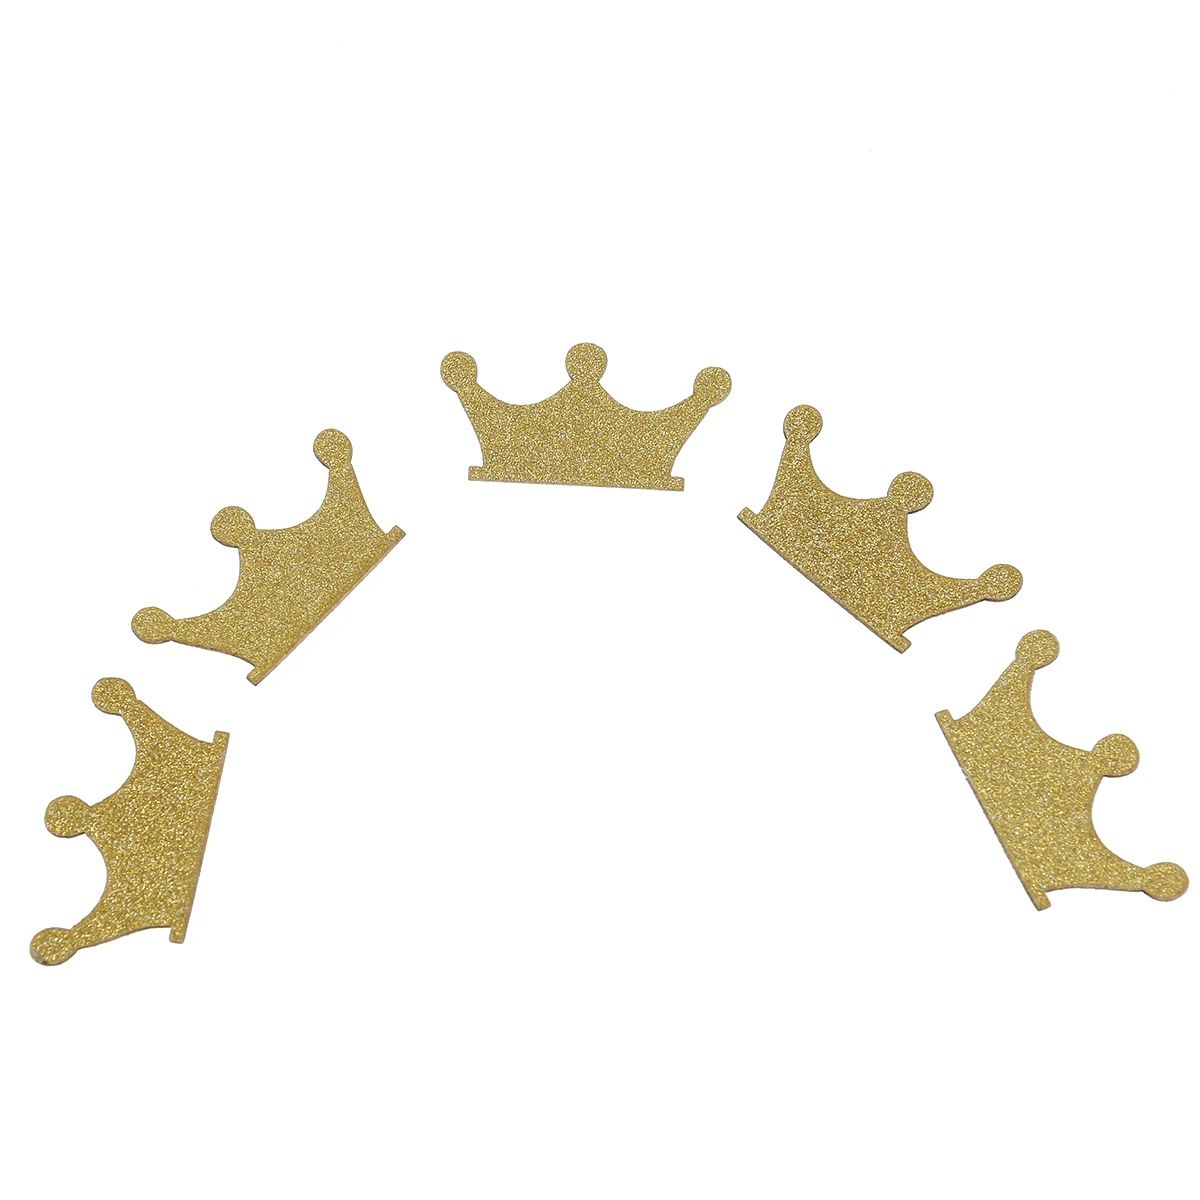 100 шт DIY Двухсторонняя золотая корона с блестками конфетти для свадьбы, дня рождения, детского душа, кекс Favors украшения сувениры